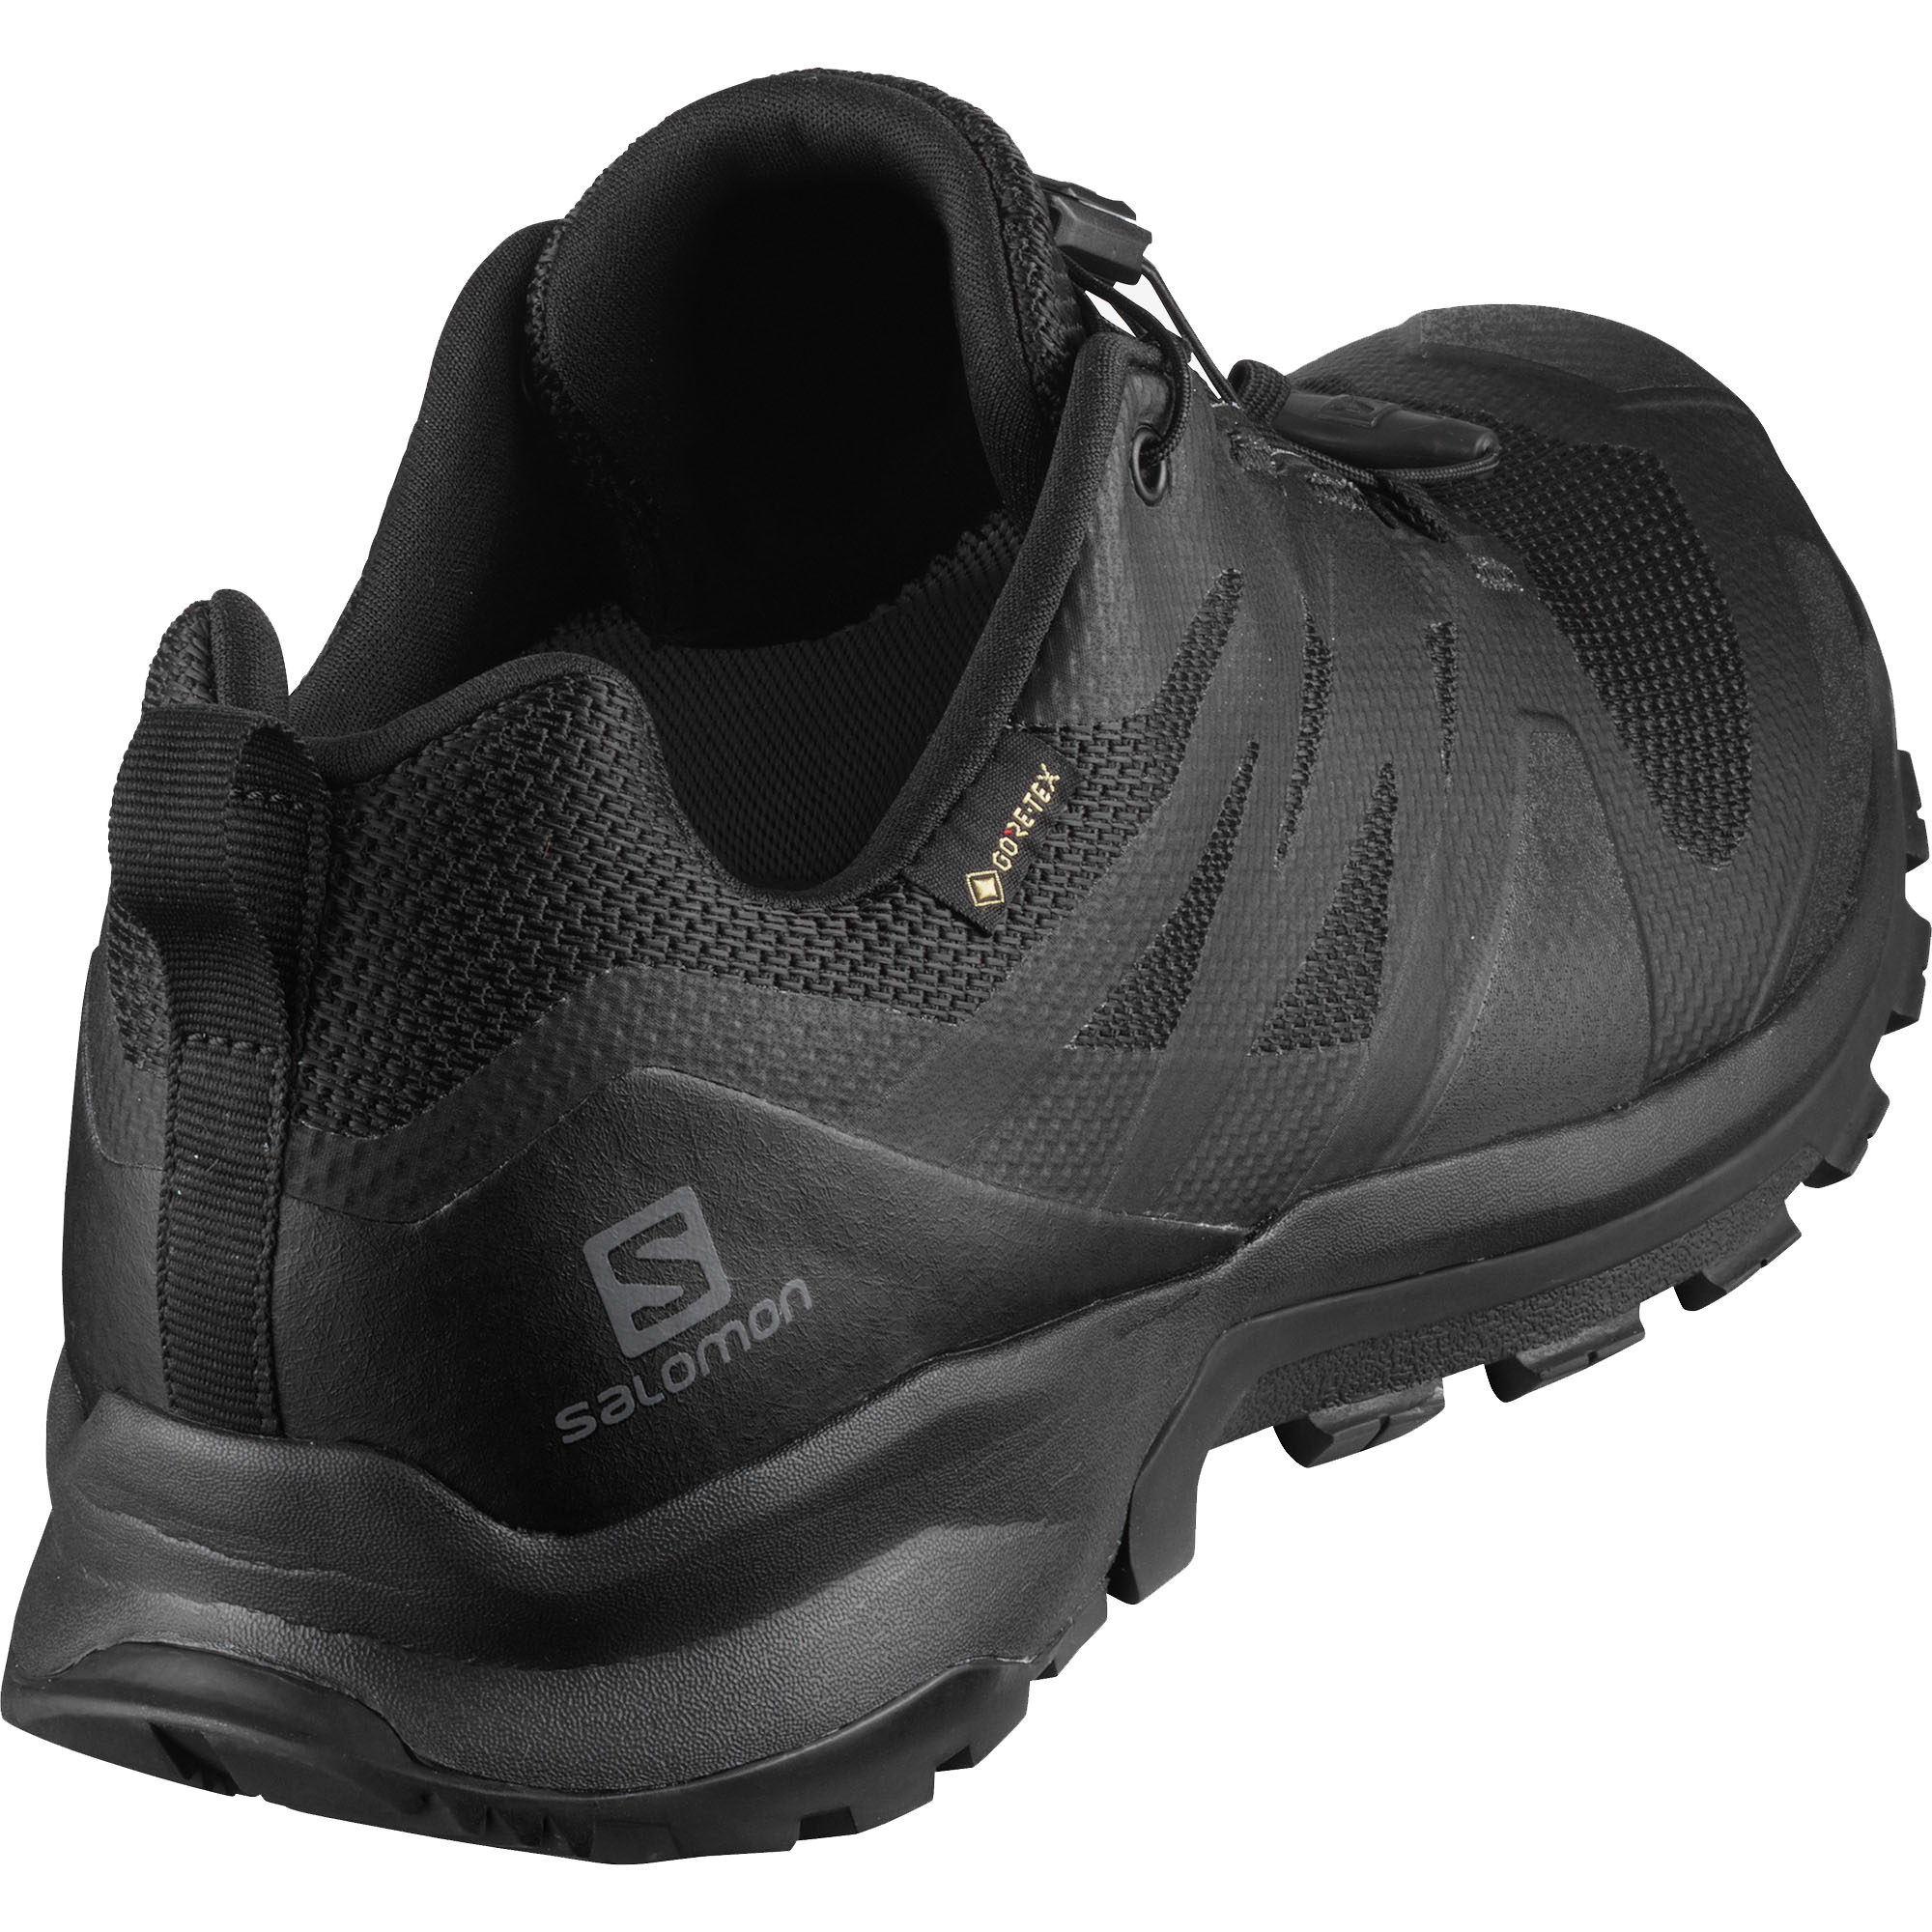 Salomon XA Rogg GTX zapatillas caballero zapatos caballero zapatos negro nuevo l41113300 